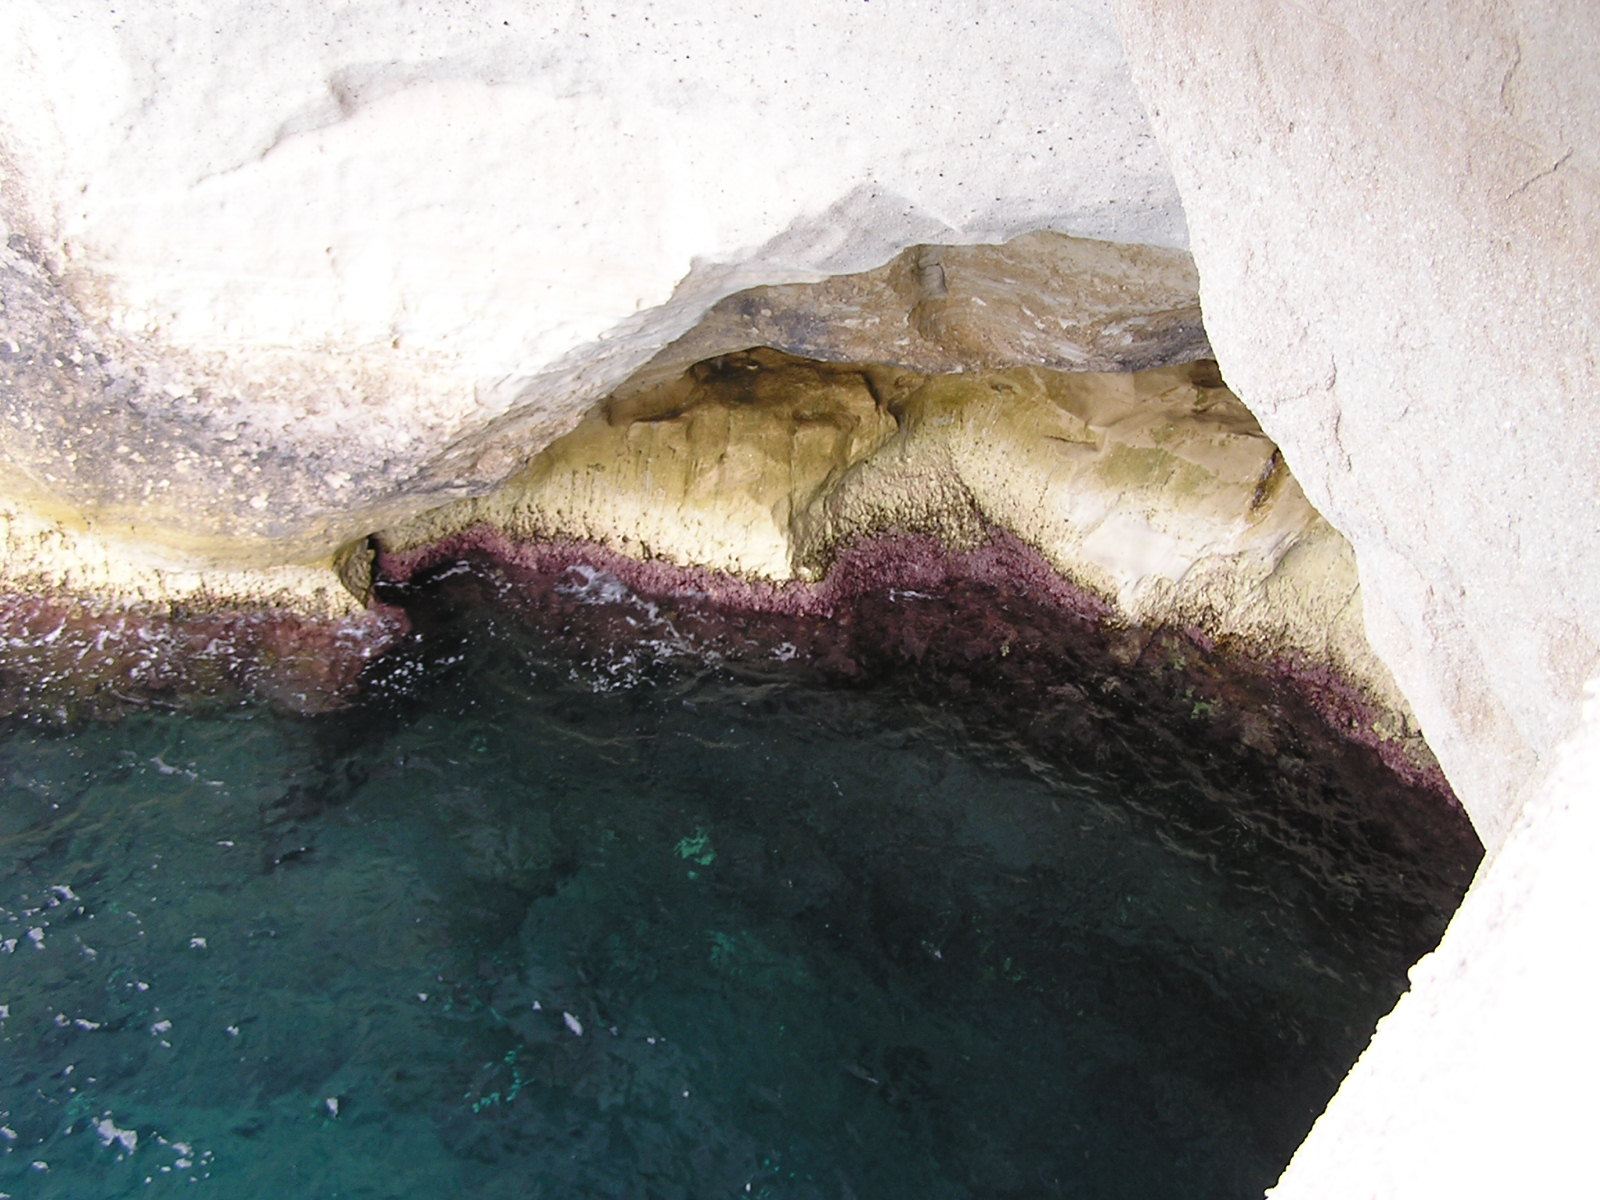 Csodálatos színű sziklákat figyelhetünk meg ott, ahol a tenger lekoptatta a fehér ‘tejszínhab‘-szerű réteget